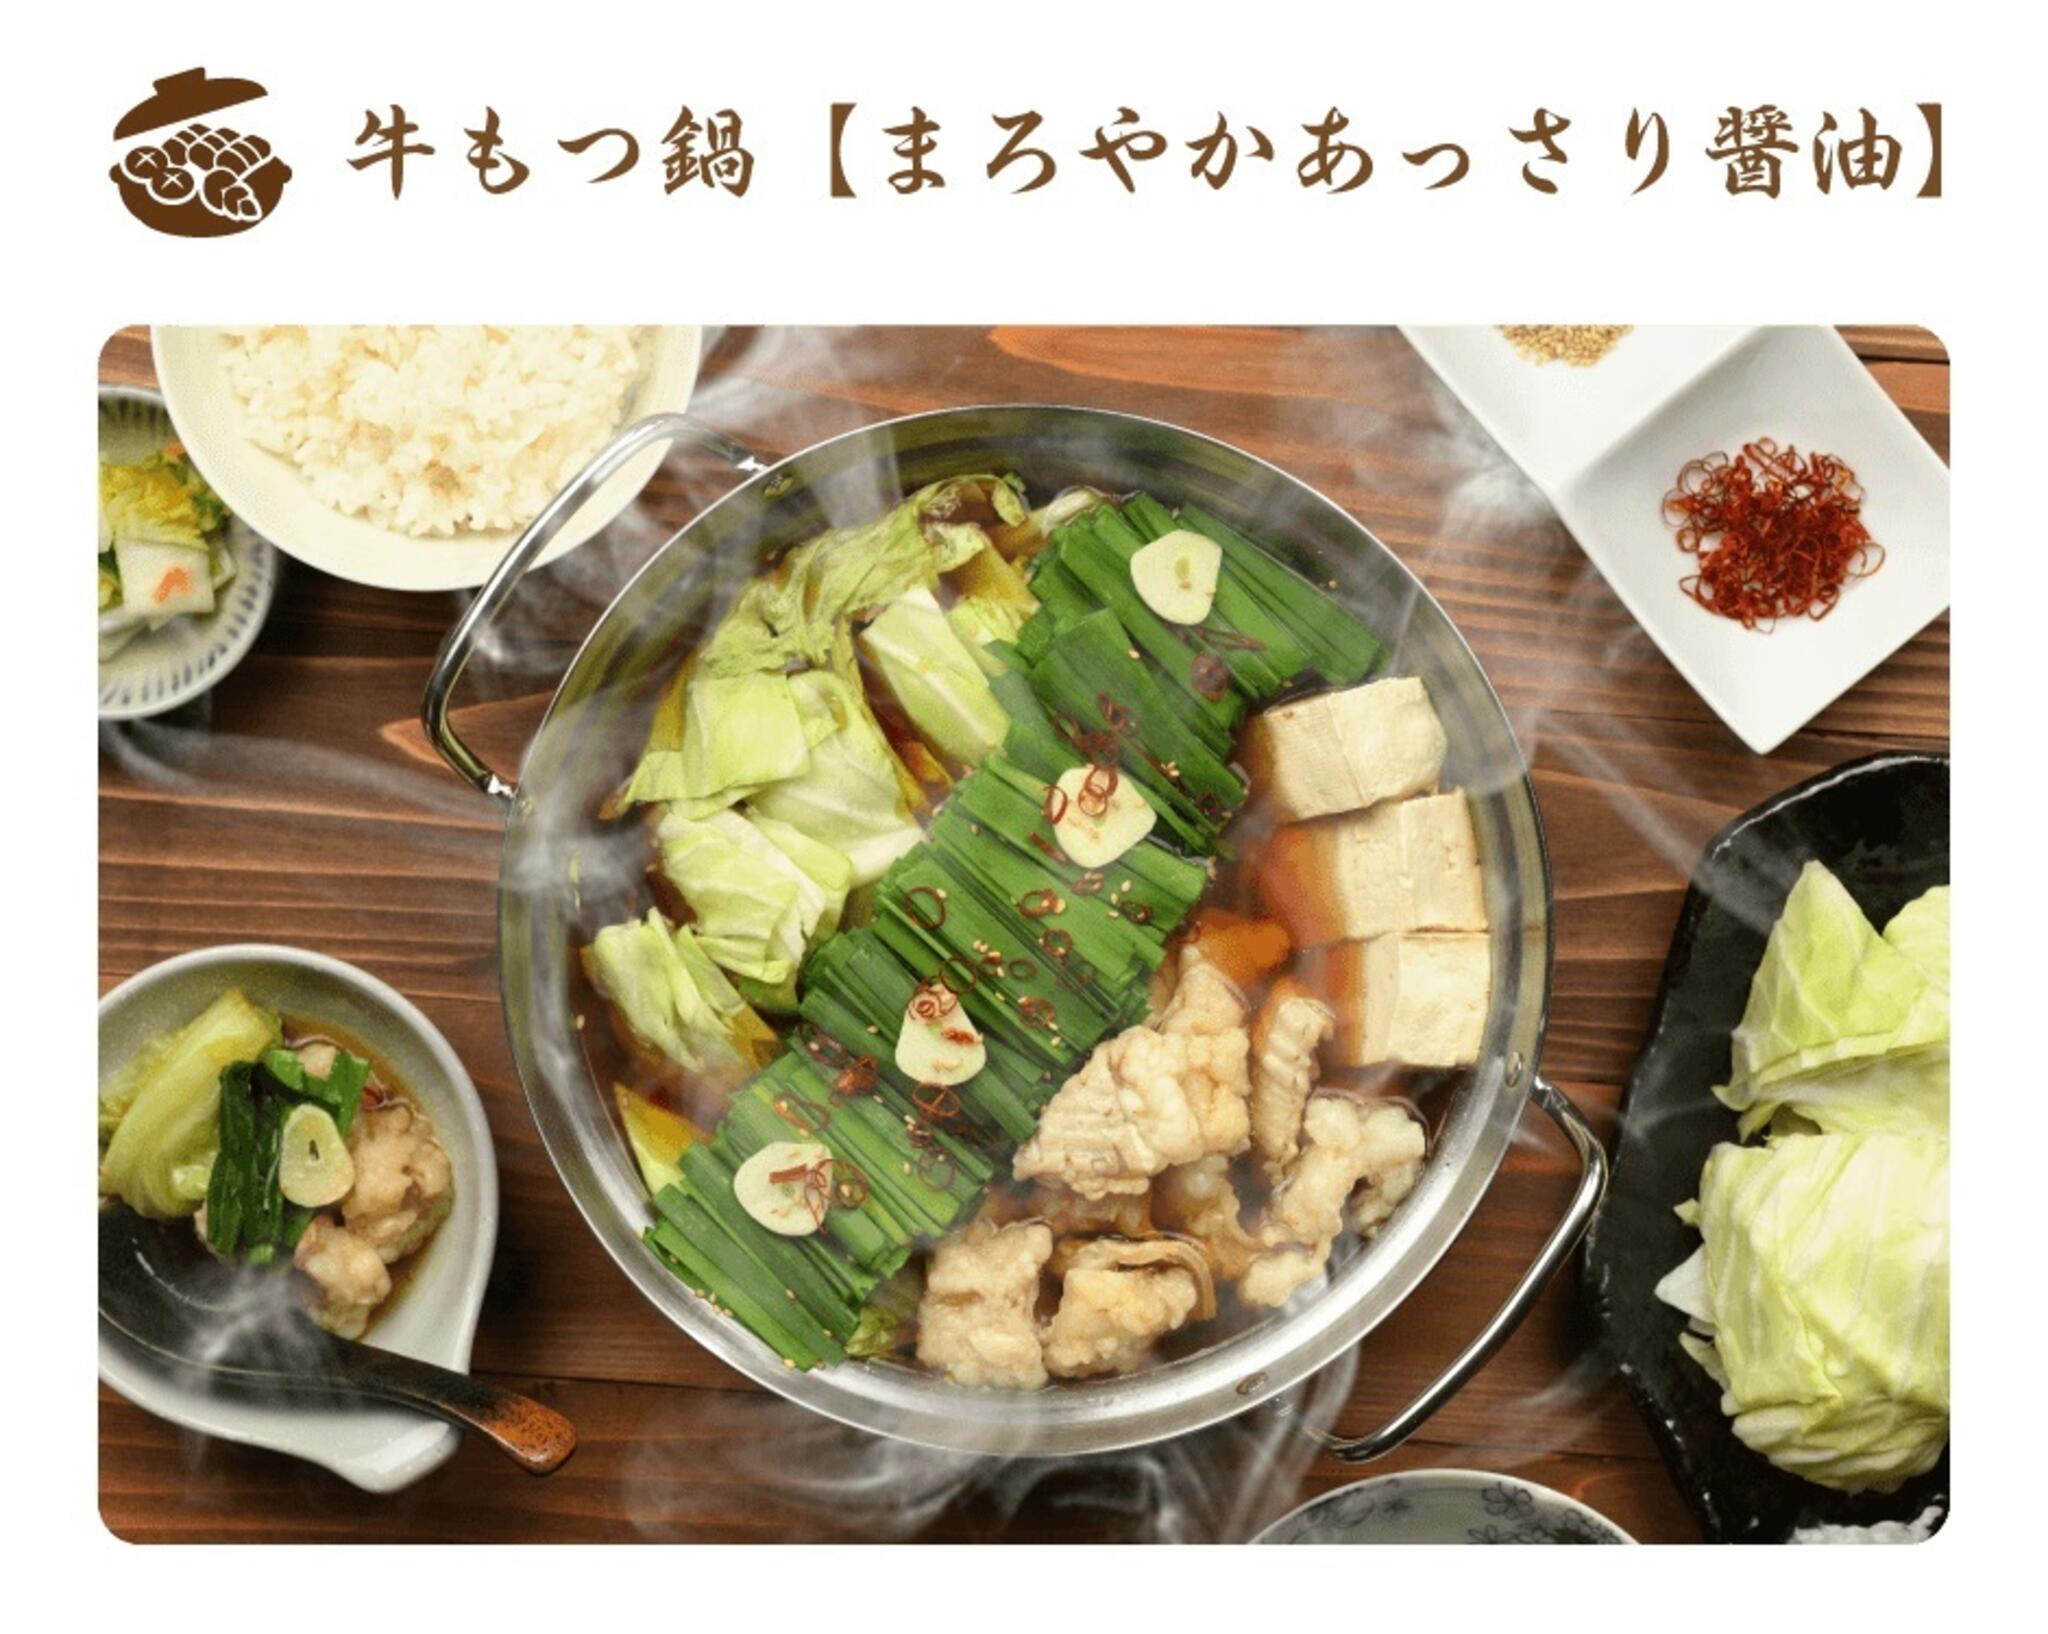 焼肉冷麺やまなか家 泉松森店からのお知らせ(🍲やまなか家通販限定❕鍋特集🍲)に関する写真